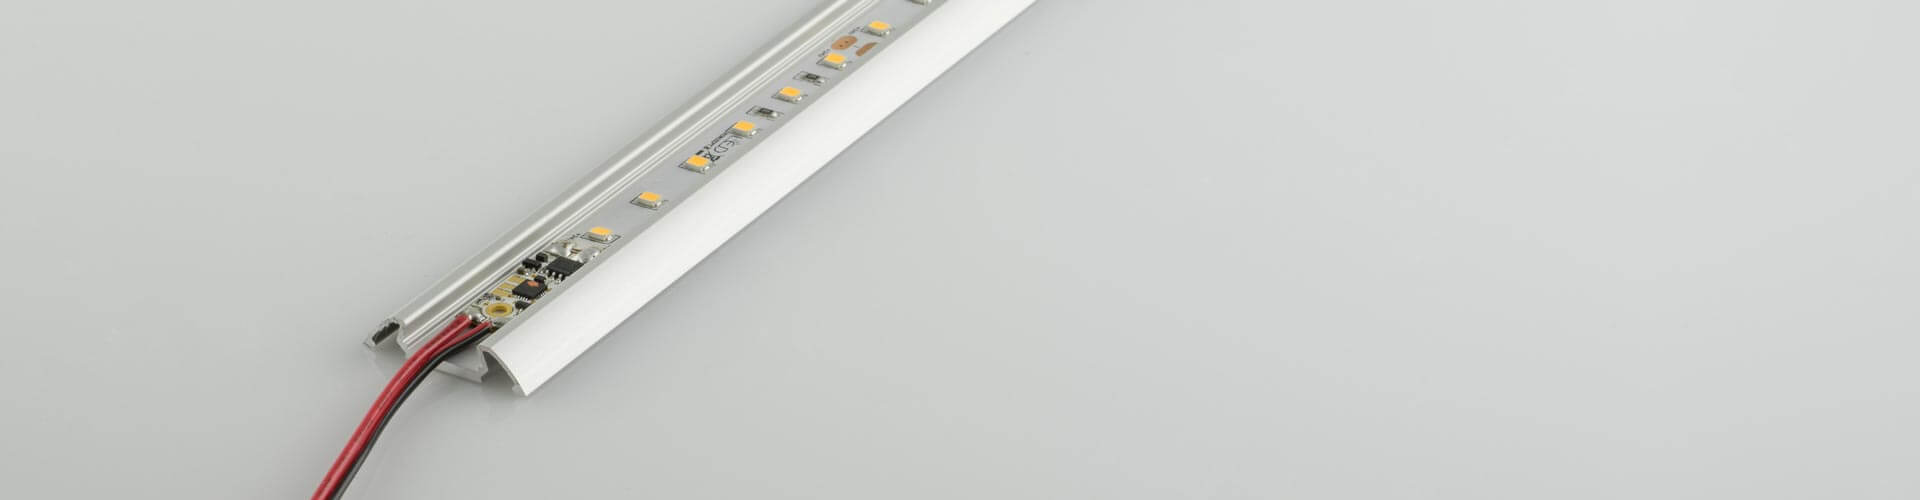 LED Streifen mit Dimmer Bild 1